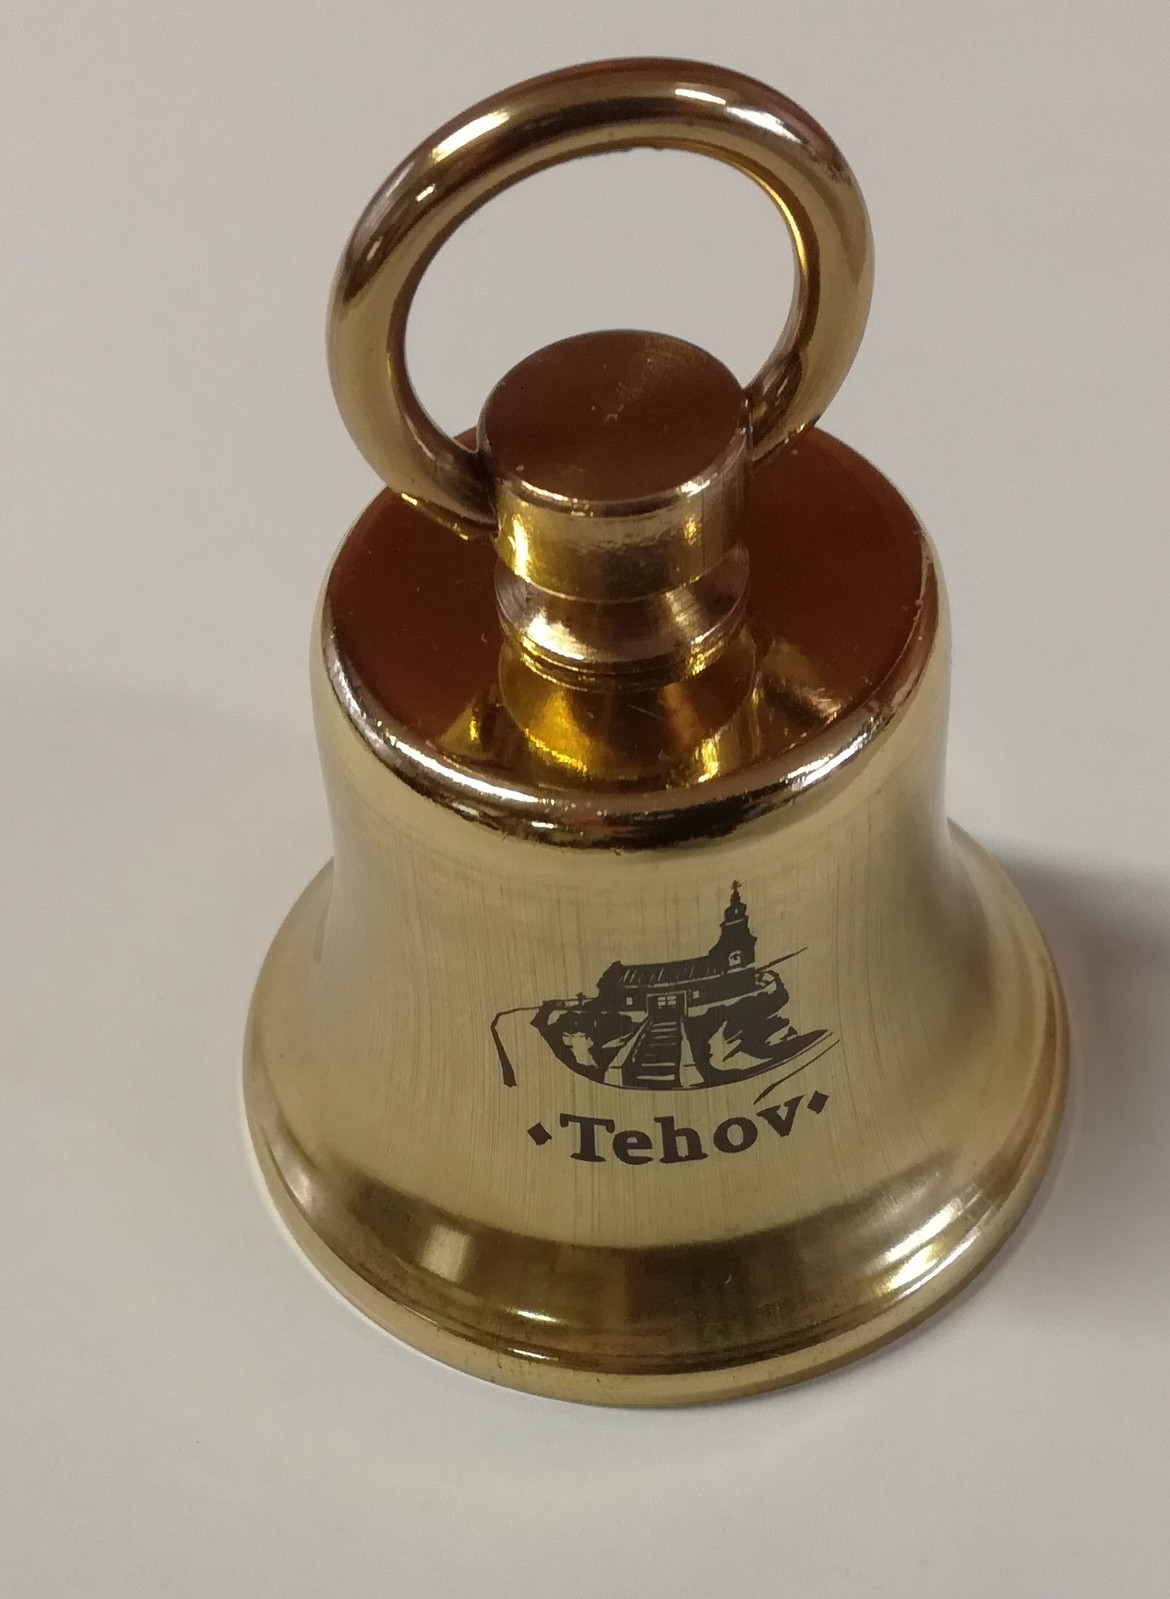 foto Tehov II zvonek 2018.jpg